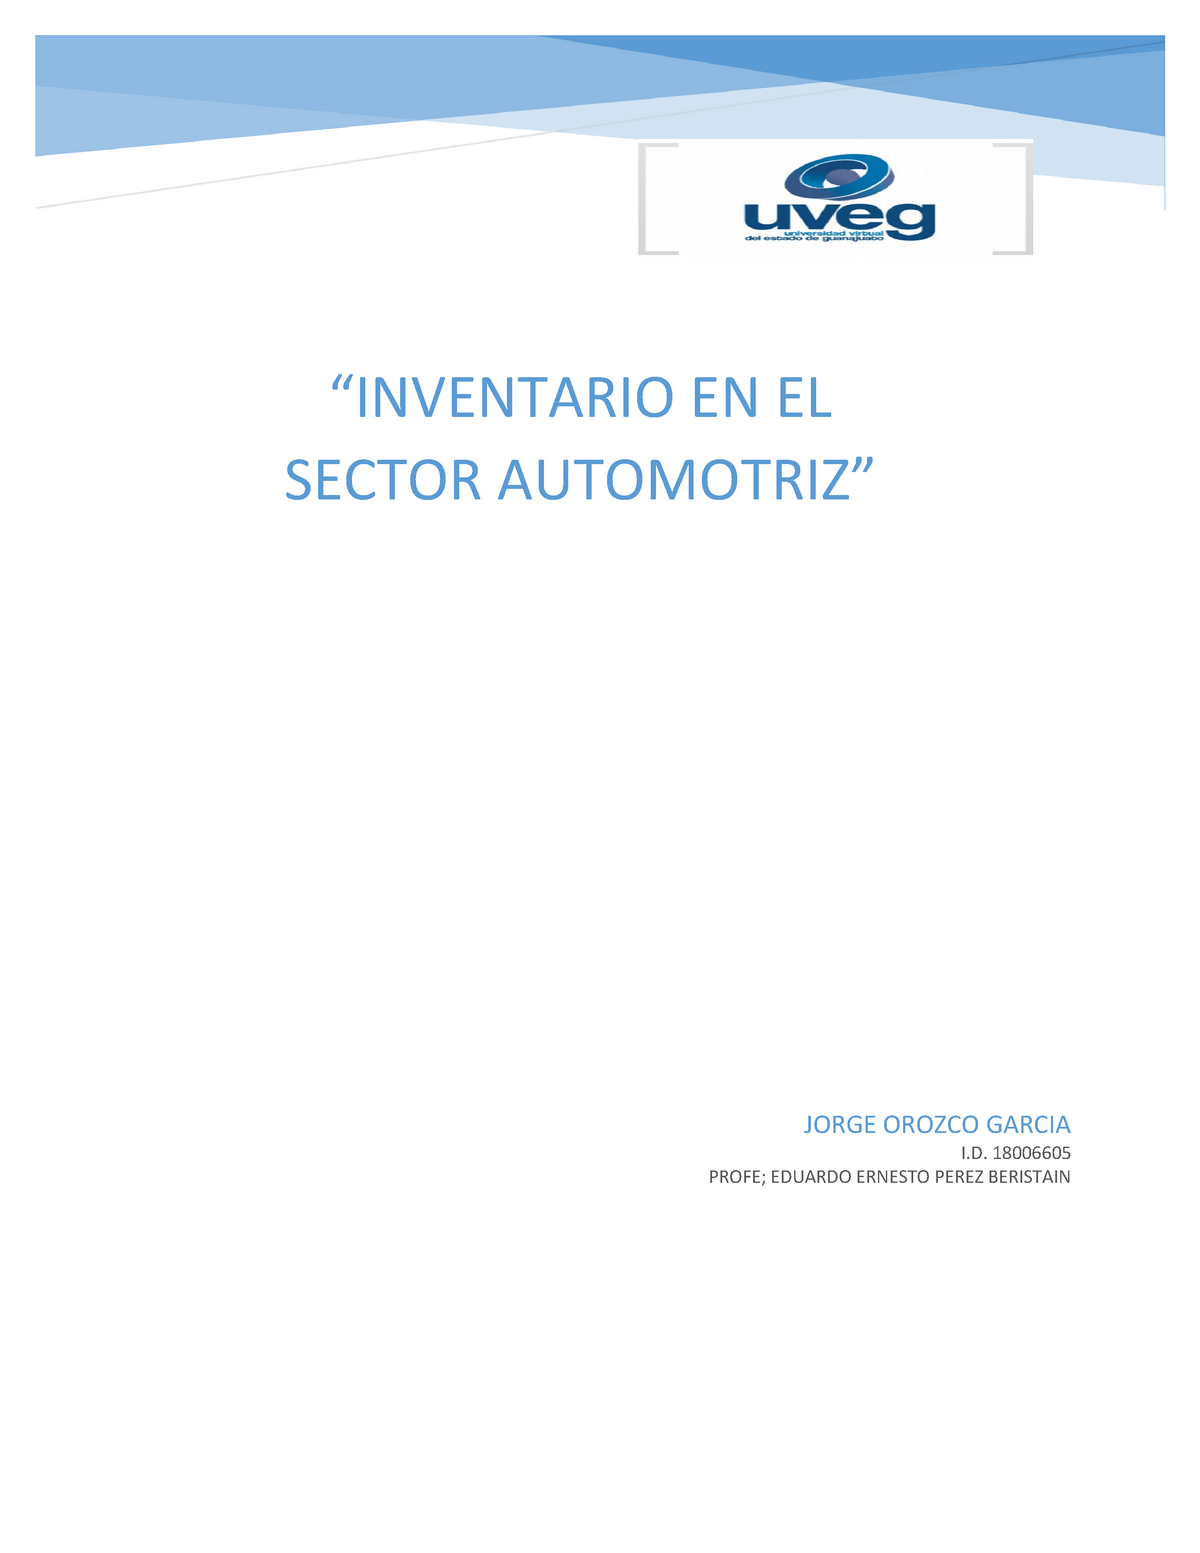 Inventario Automotriz Uveg “inventario En El Sector Automotriz” Jorge Orozco Garcia I 8263